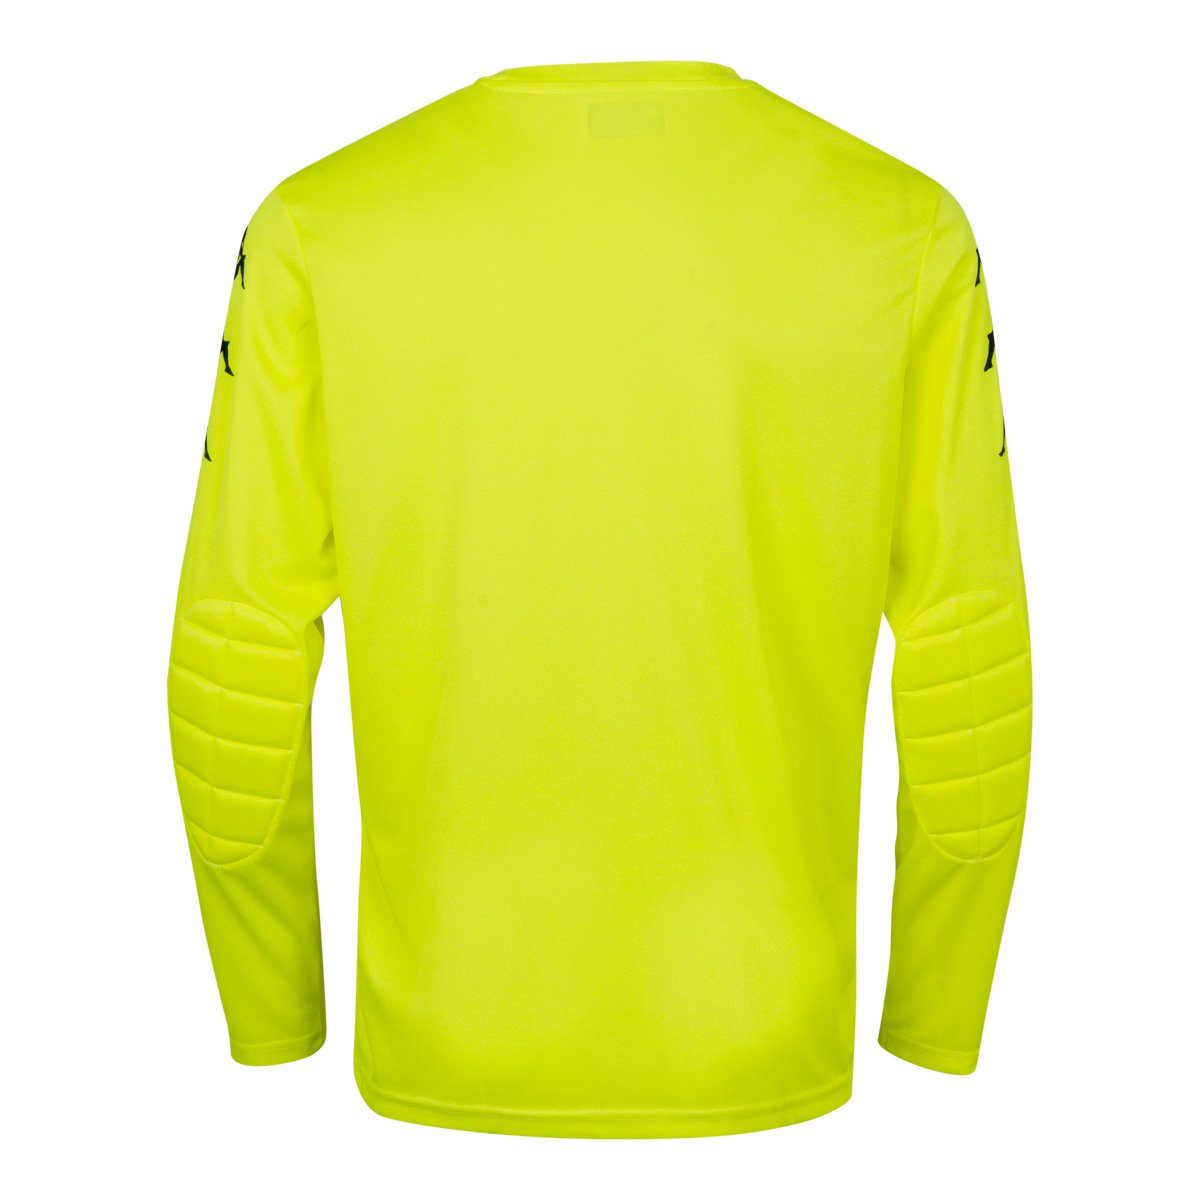 Camiseta de juego Fútbol Portero Amarillo Niños - Imagen 2